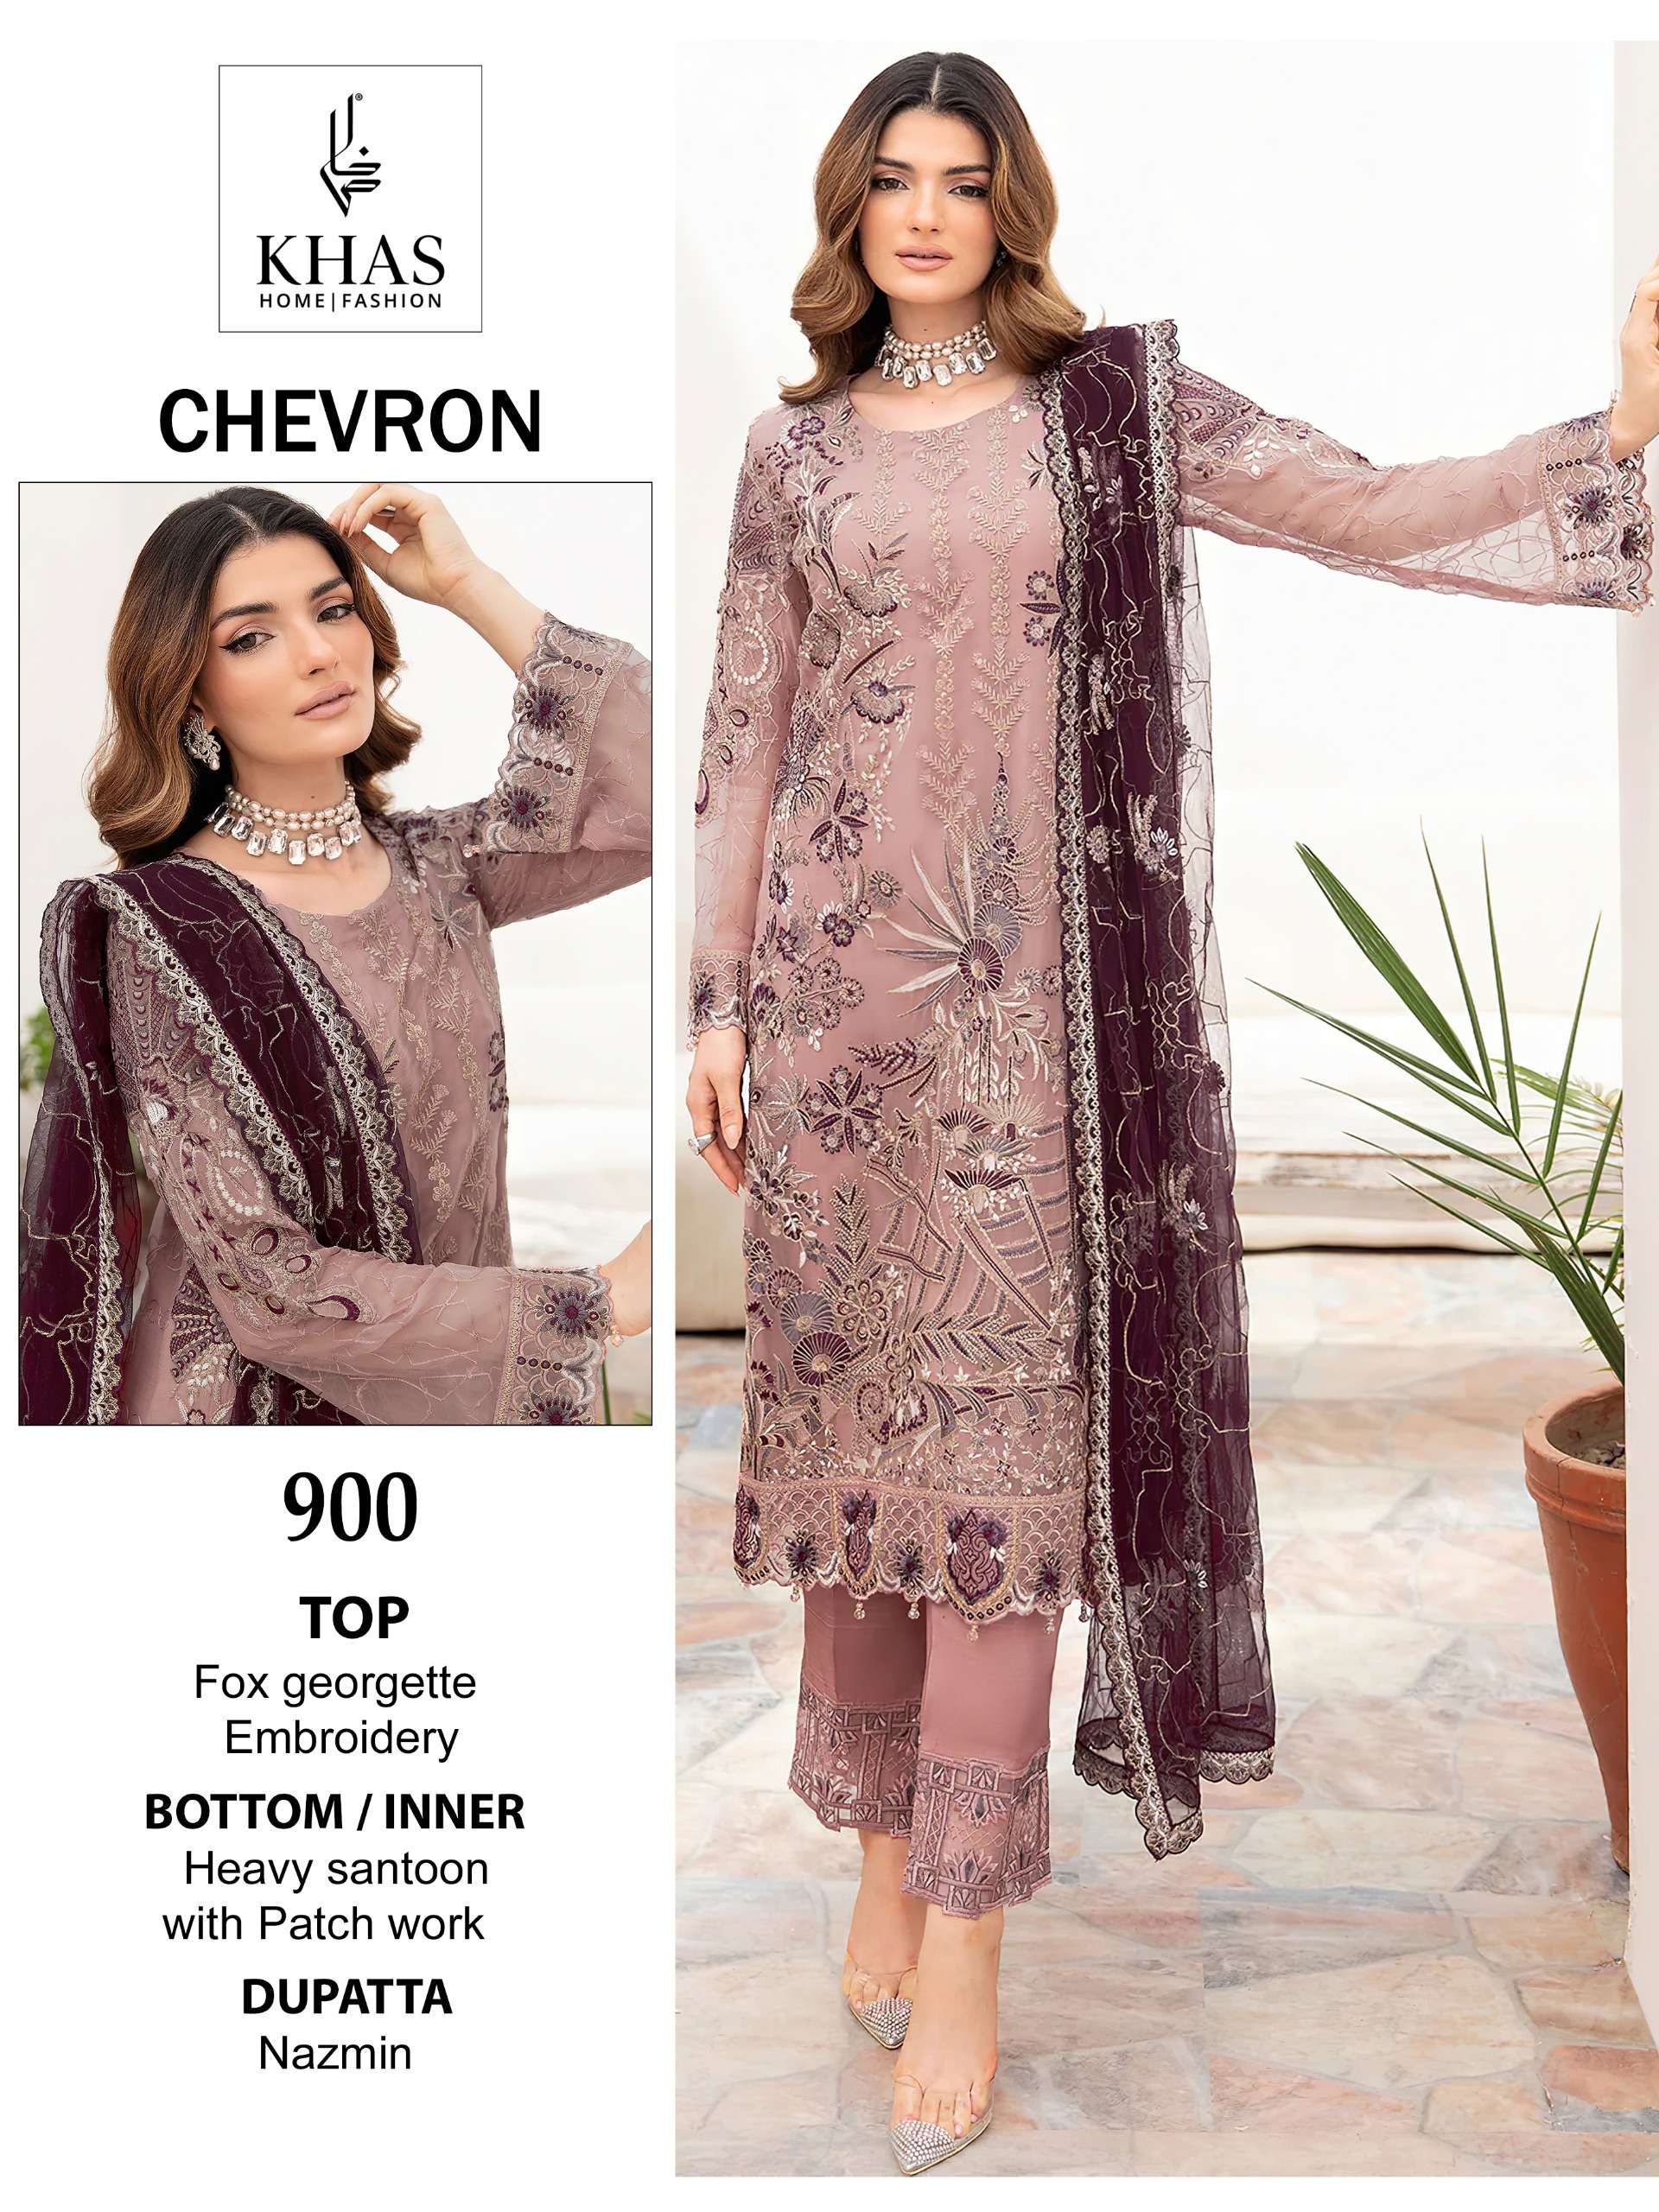 Khas Chevron Faux Georgette Pakistani Suits Wholesale catalog